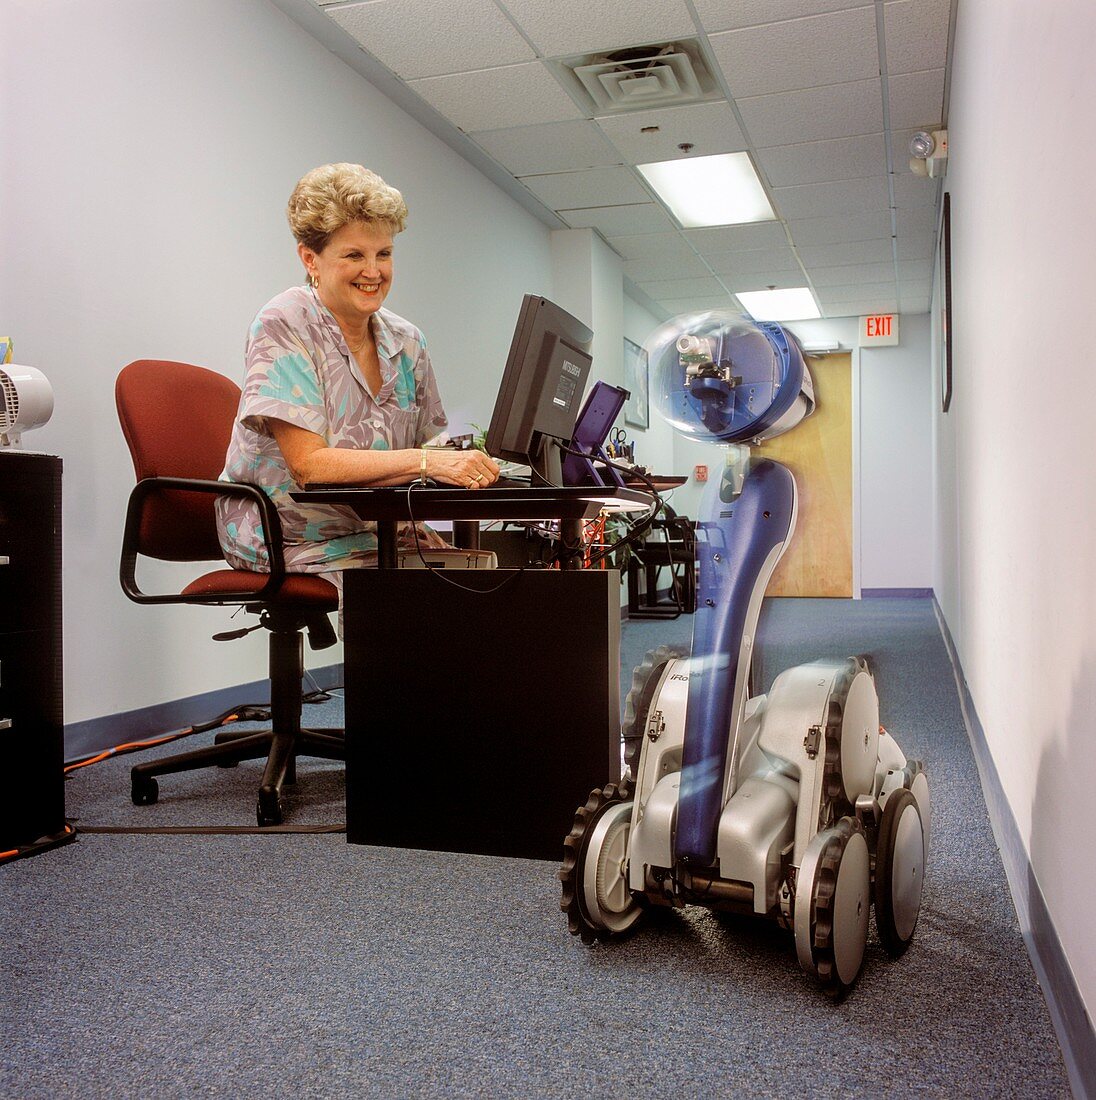 iRobot-LE office robot